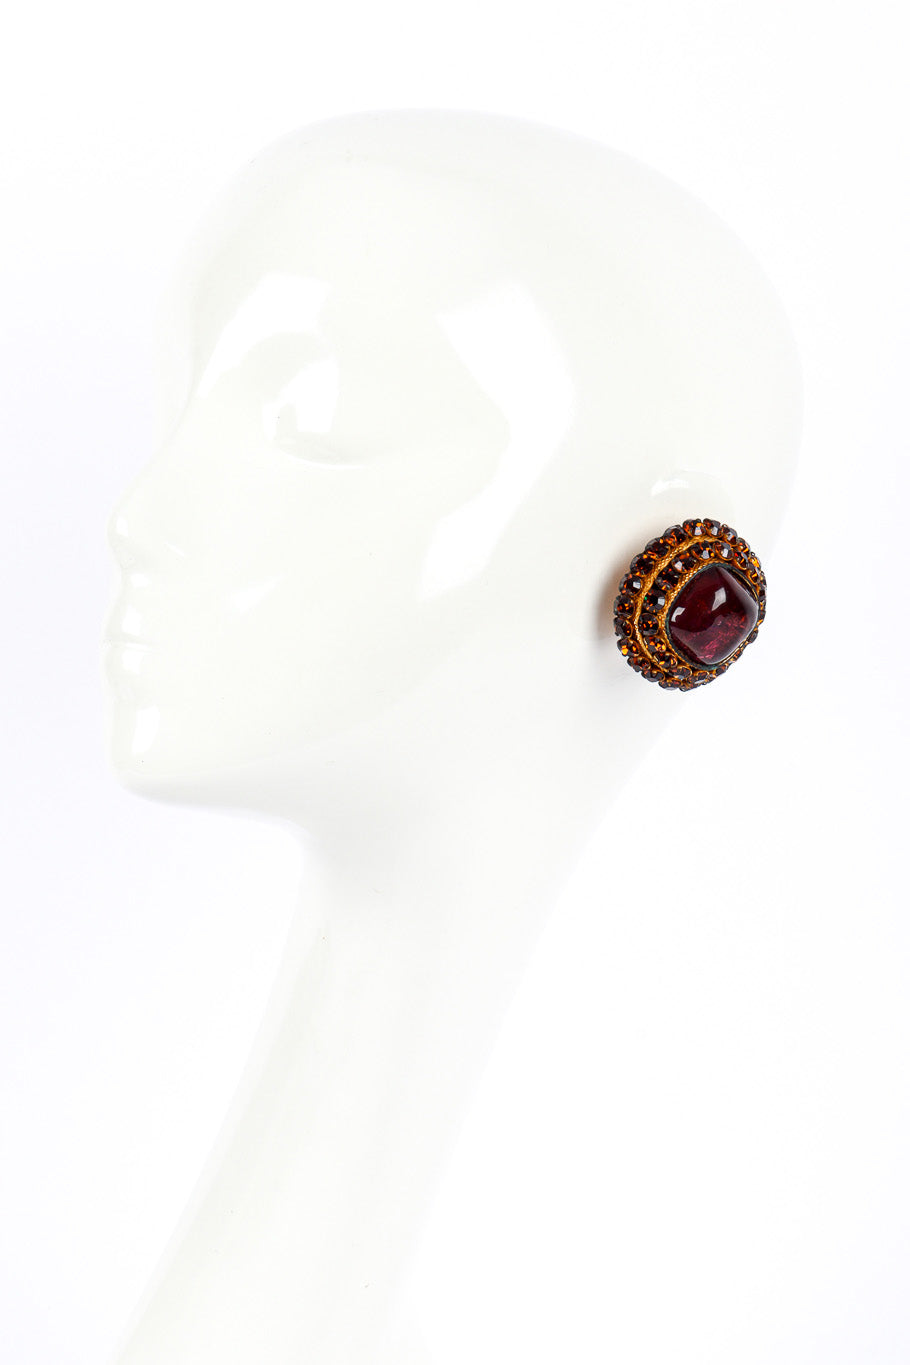 Vintage Dominique Aurientis Crystal Gripoix Necklace & Earrings Set earrings on mannequin @recessla